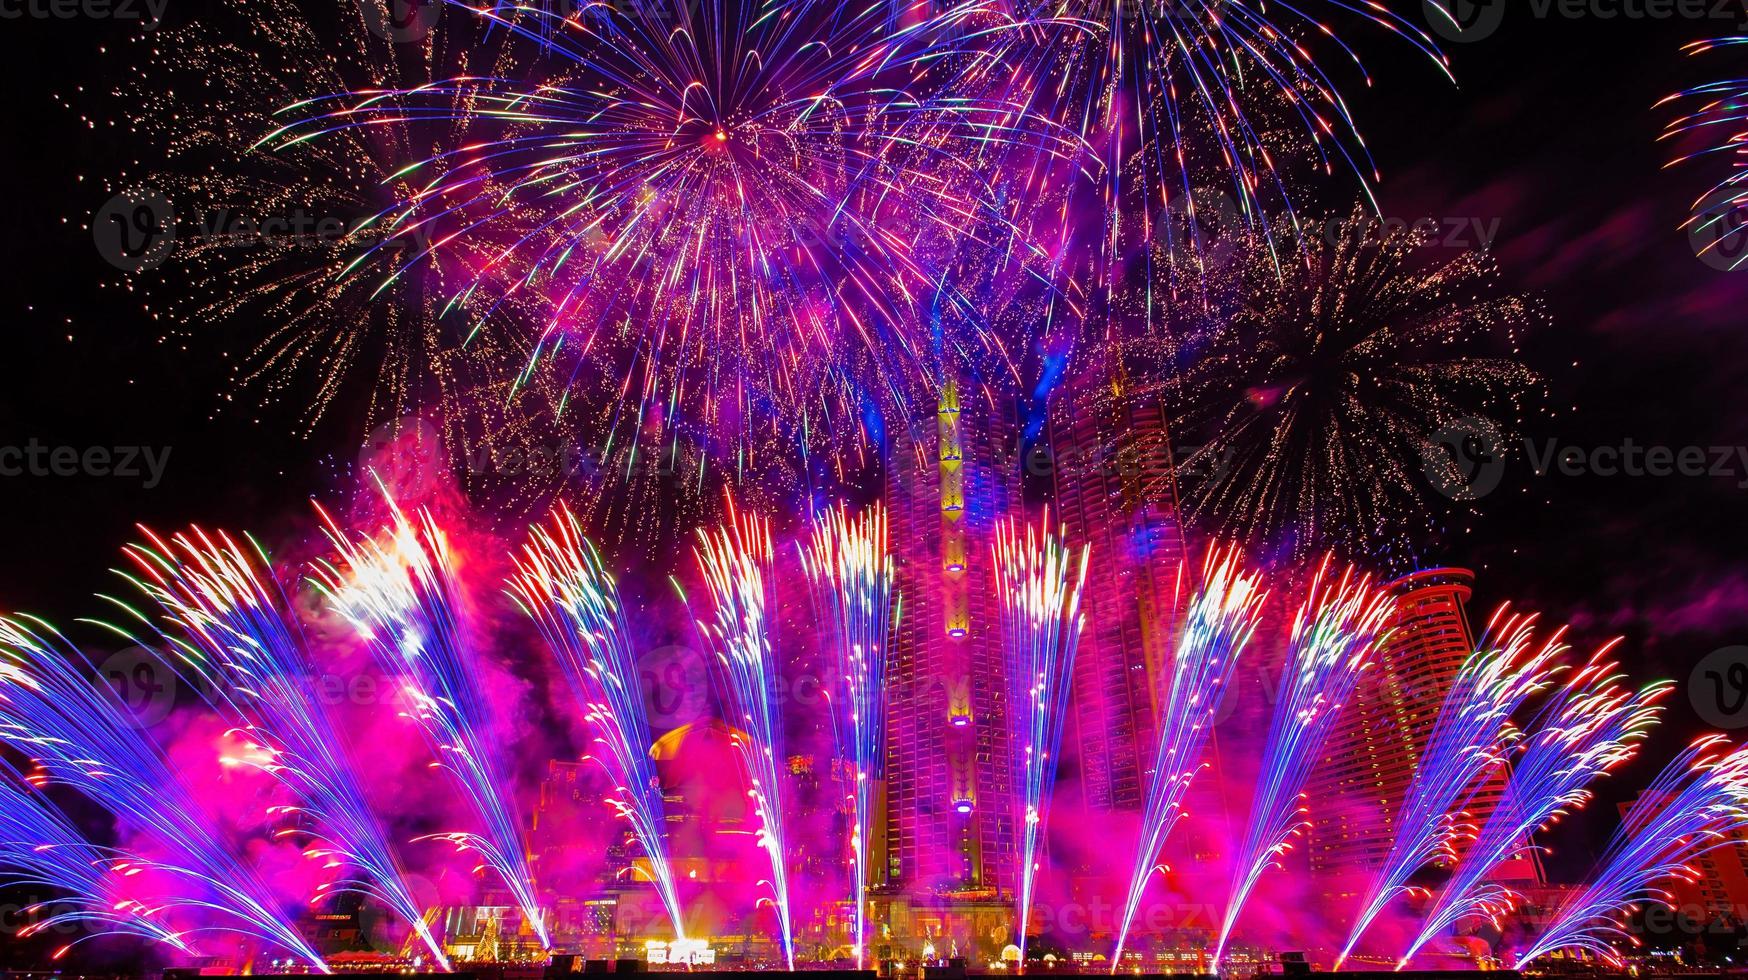 kleurrijk vuurwerk in het vieren van het nieuwe jaar bij de chao phraya-rivier in bangkok, thailand. foto